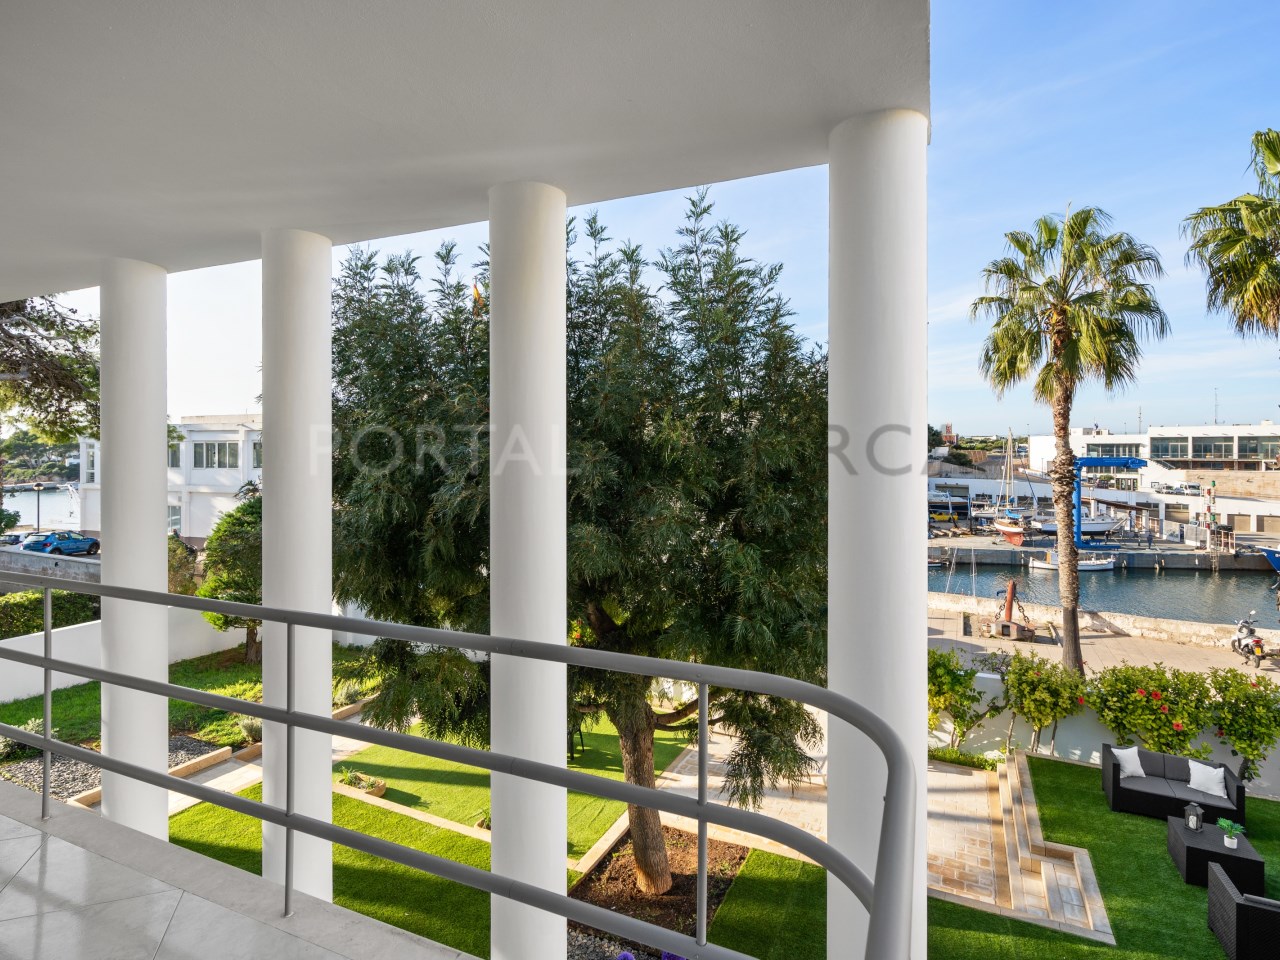 Villa for sale in the port of Ciutadella